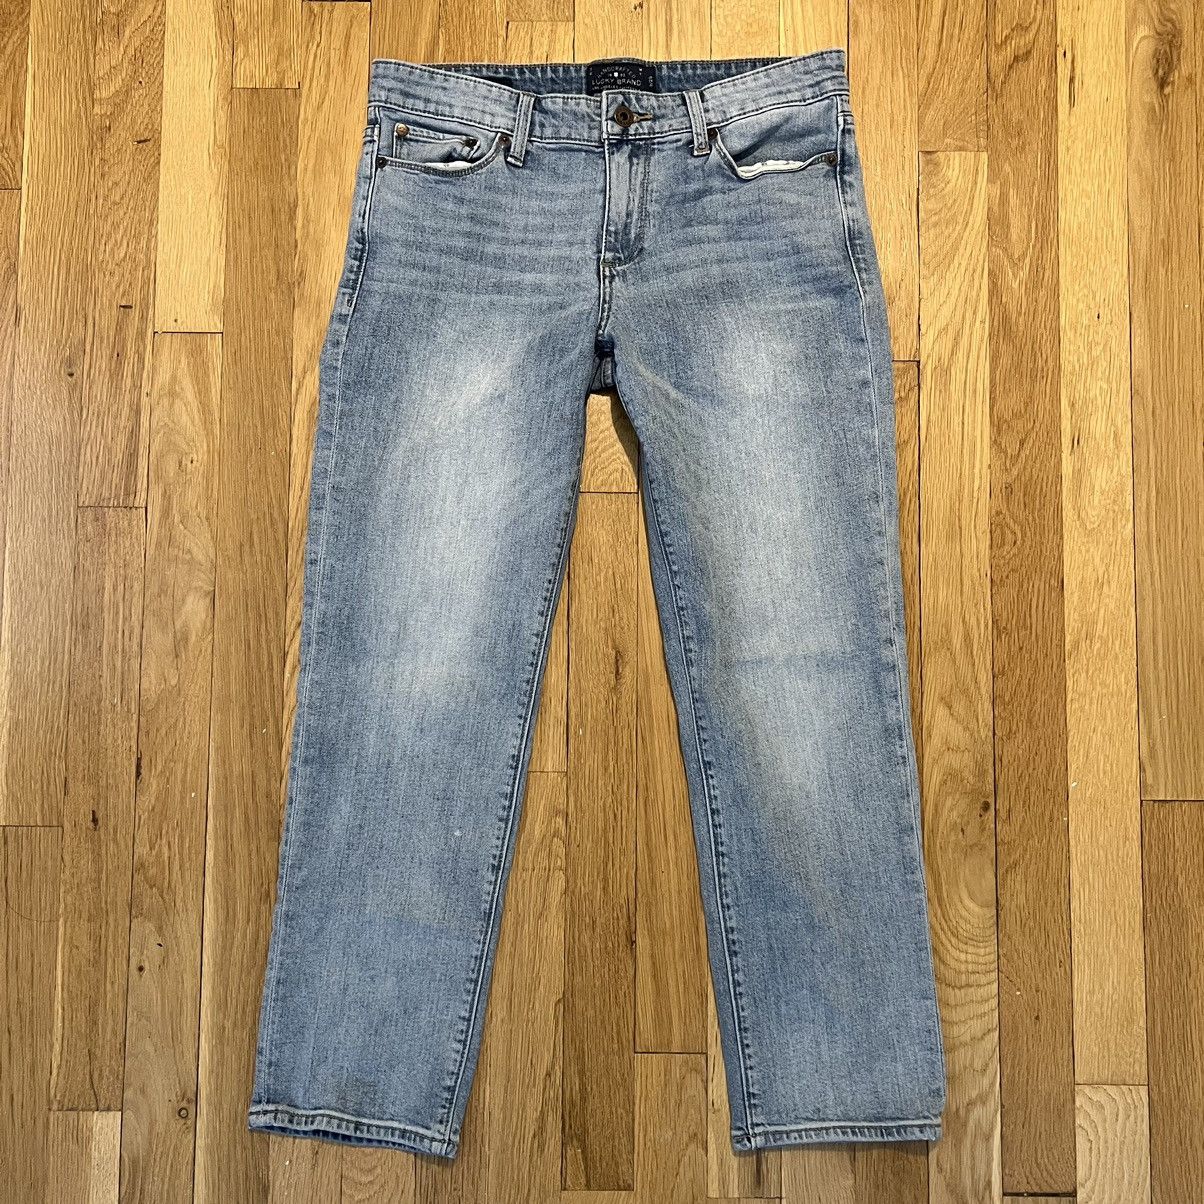 Lucky Brand Jeans Women Size 8/29 Charlie Capri Light Wash Denim